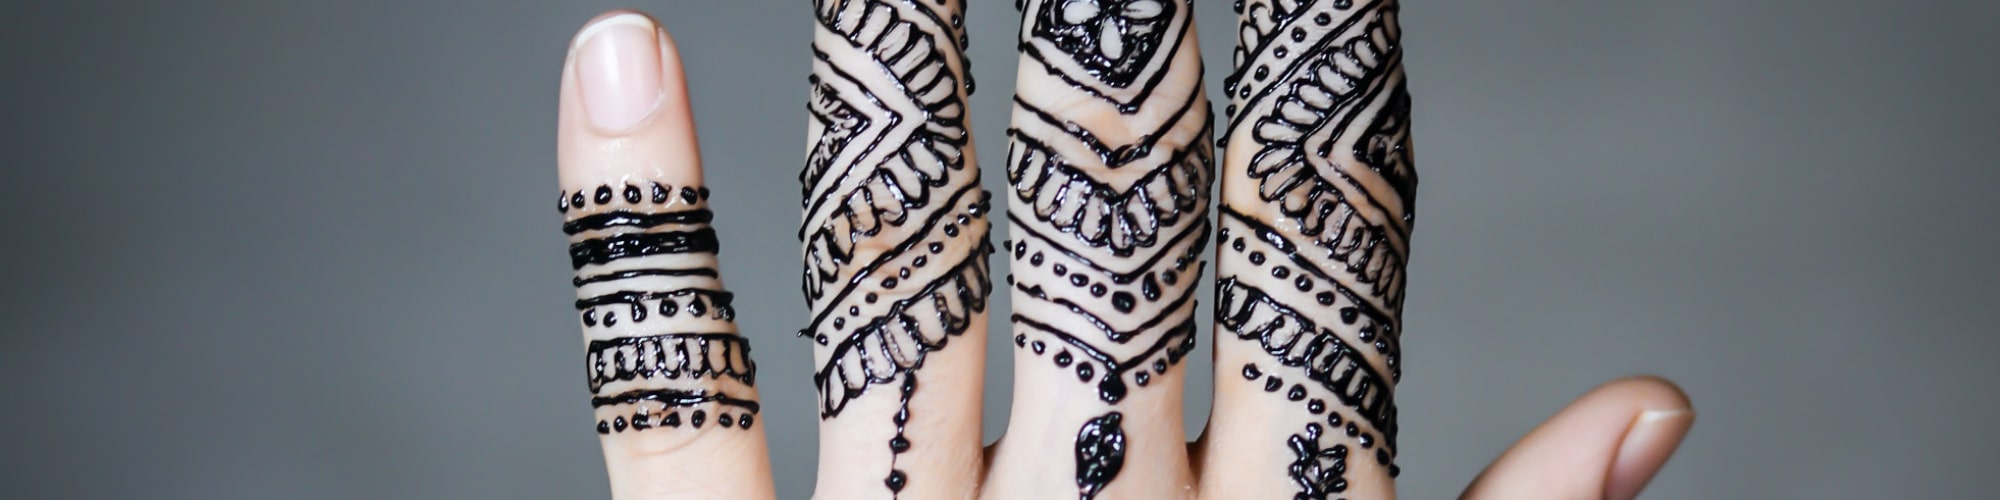 Lys hånd med henna tatoveringer